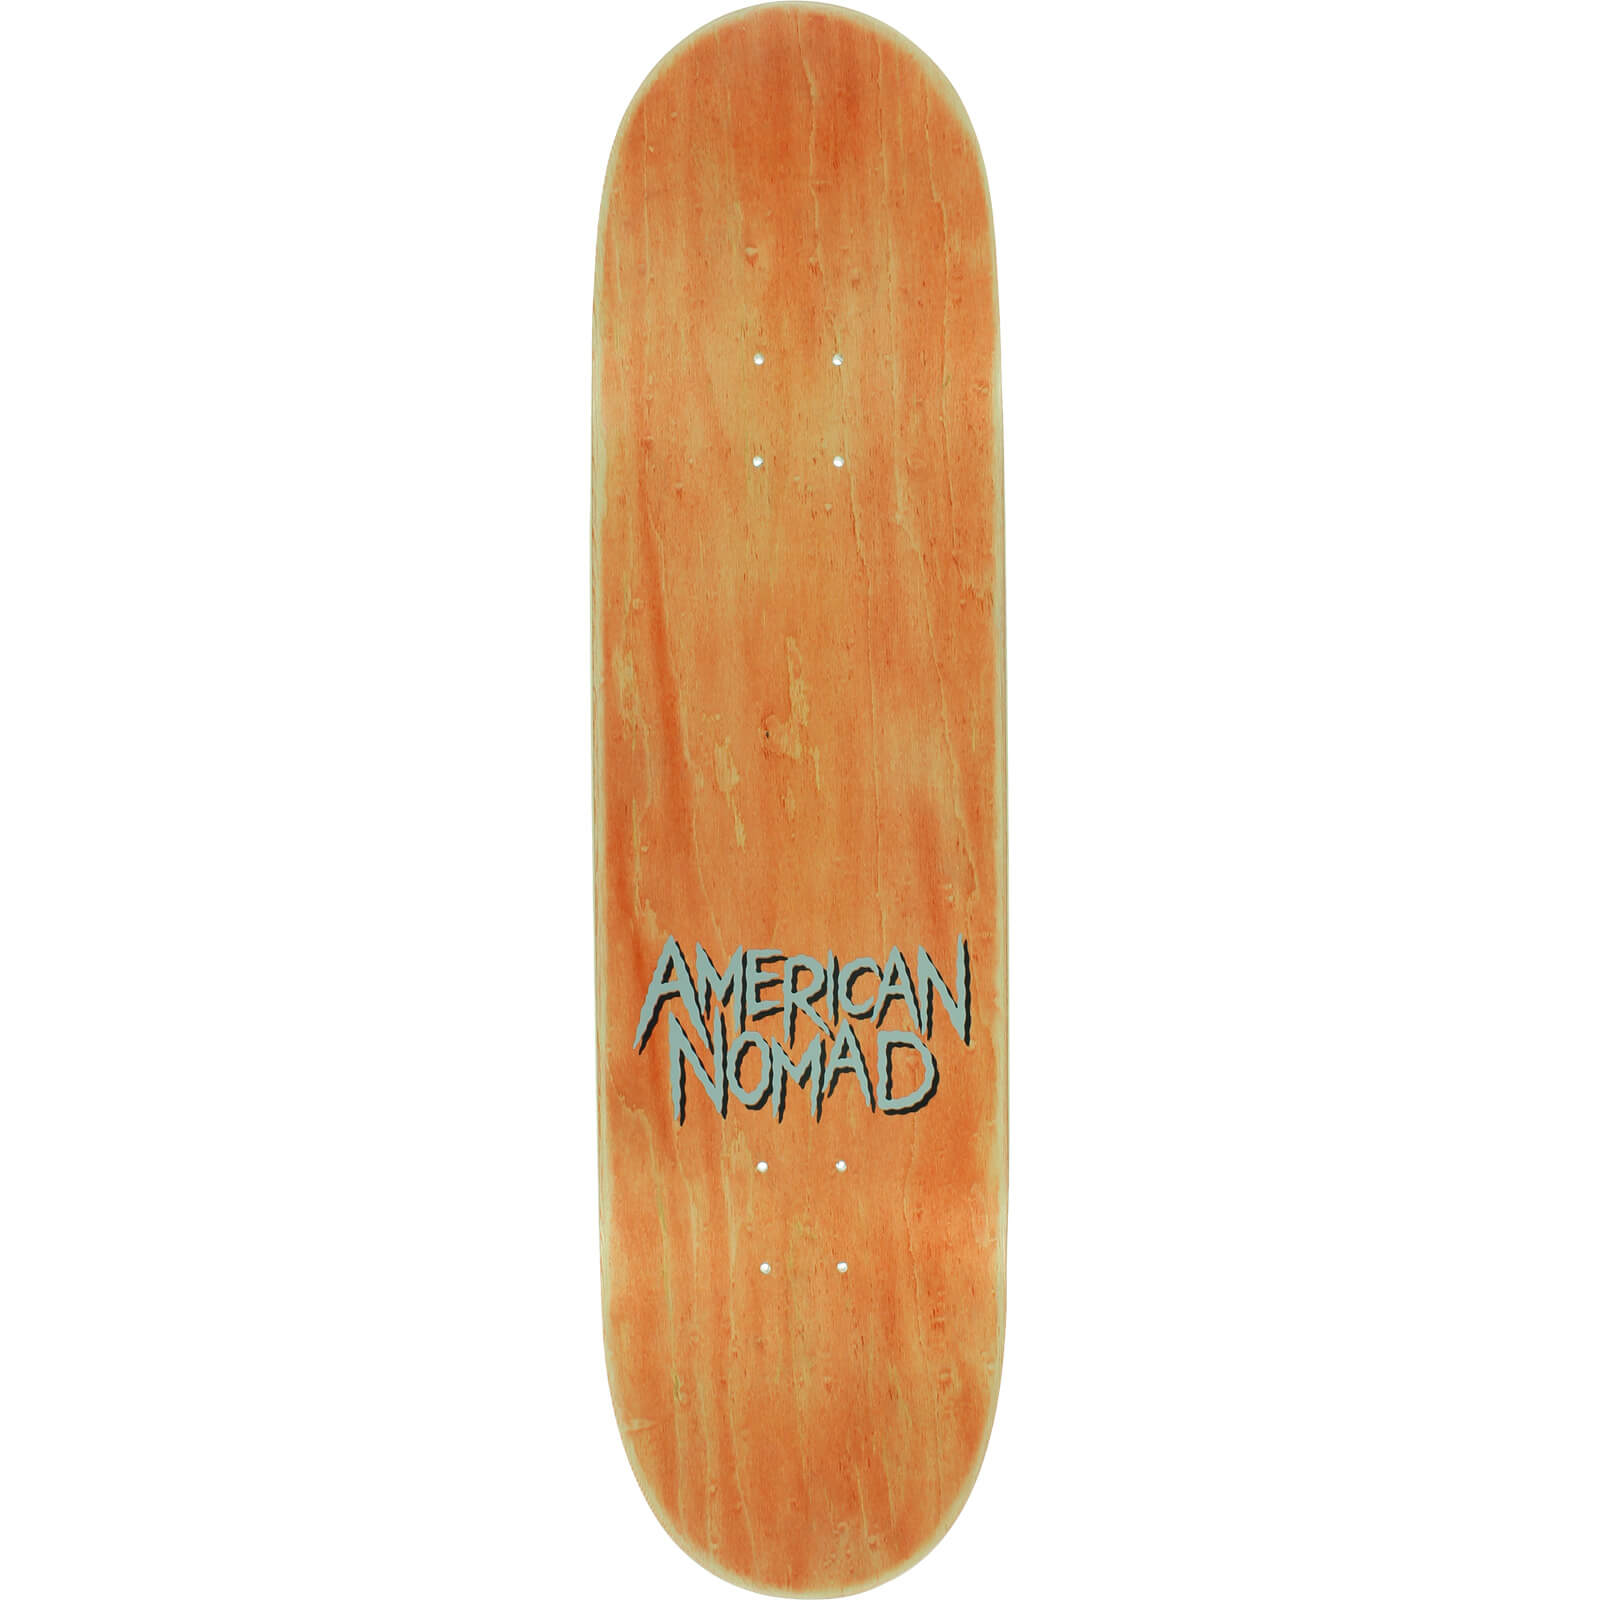 American Nomad Skateboards Cafe Racer Black Skateboard Deck  8.5 x 32.5  Warehouse Skateboards